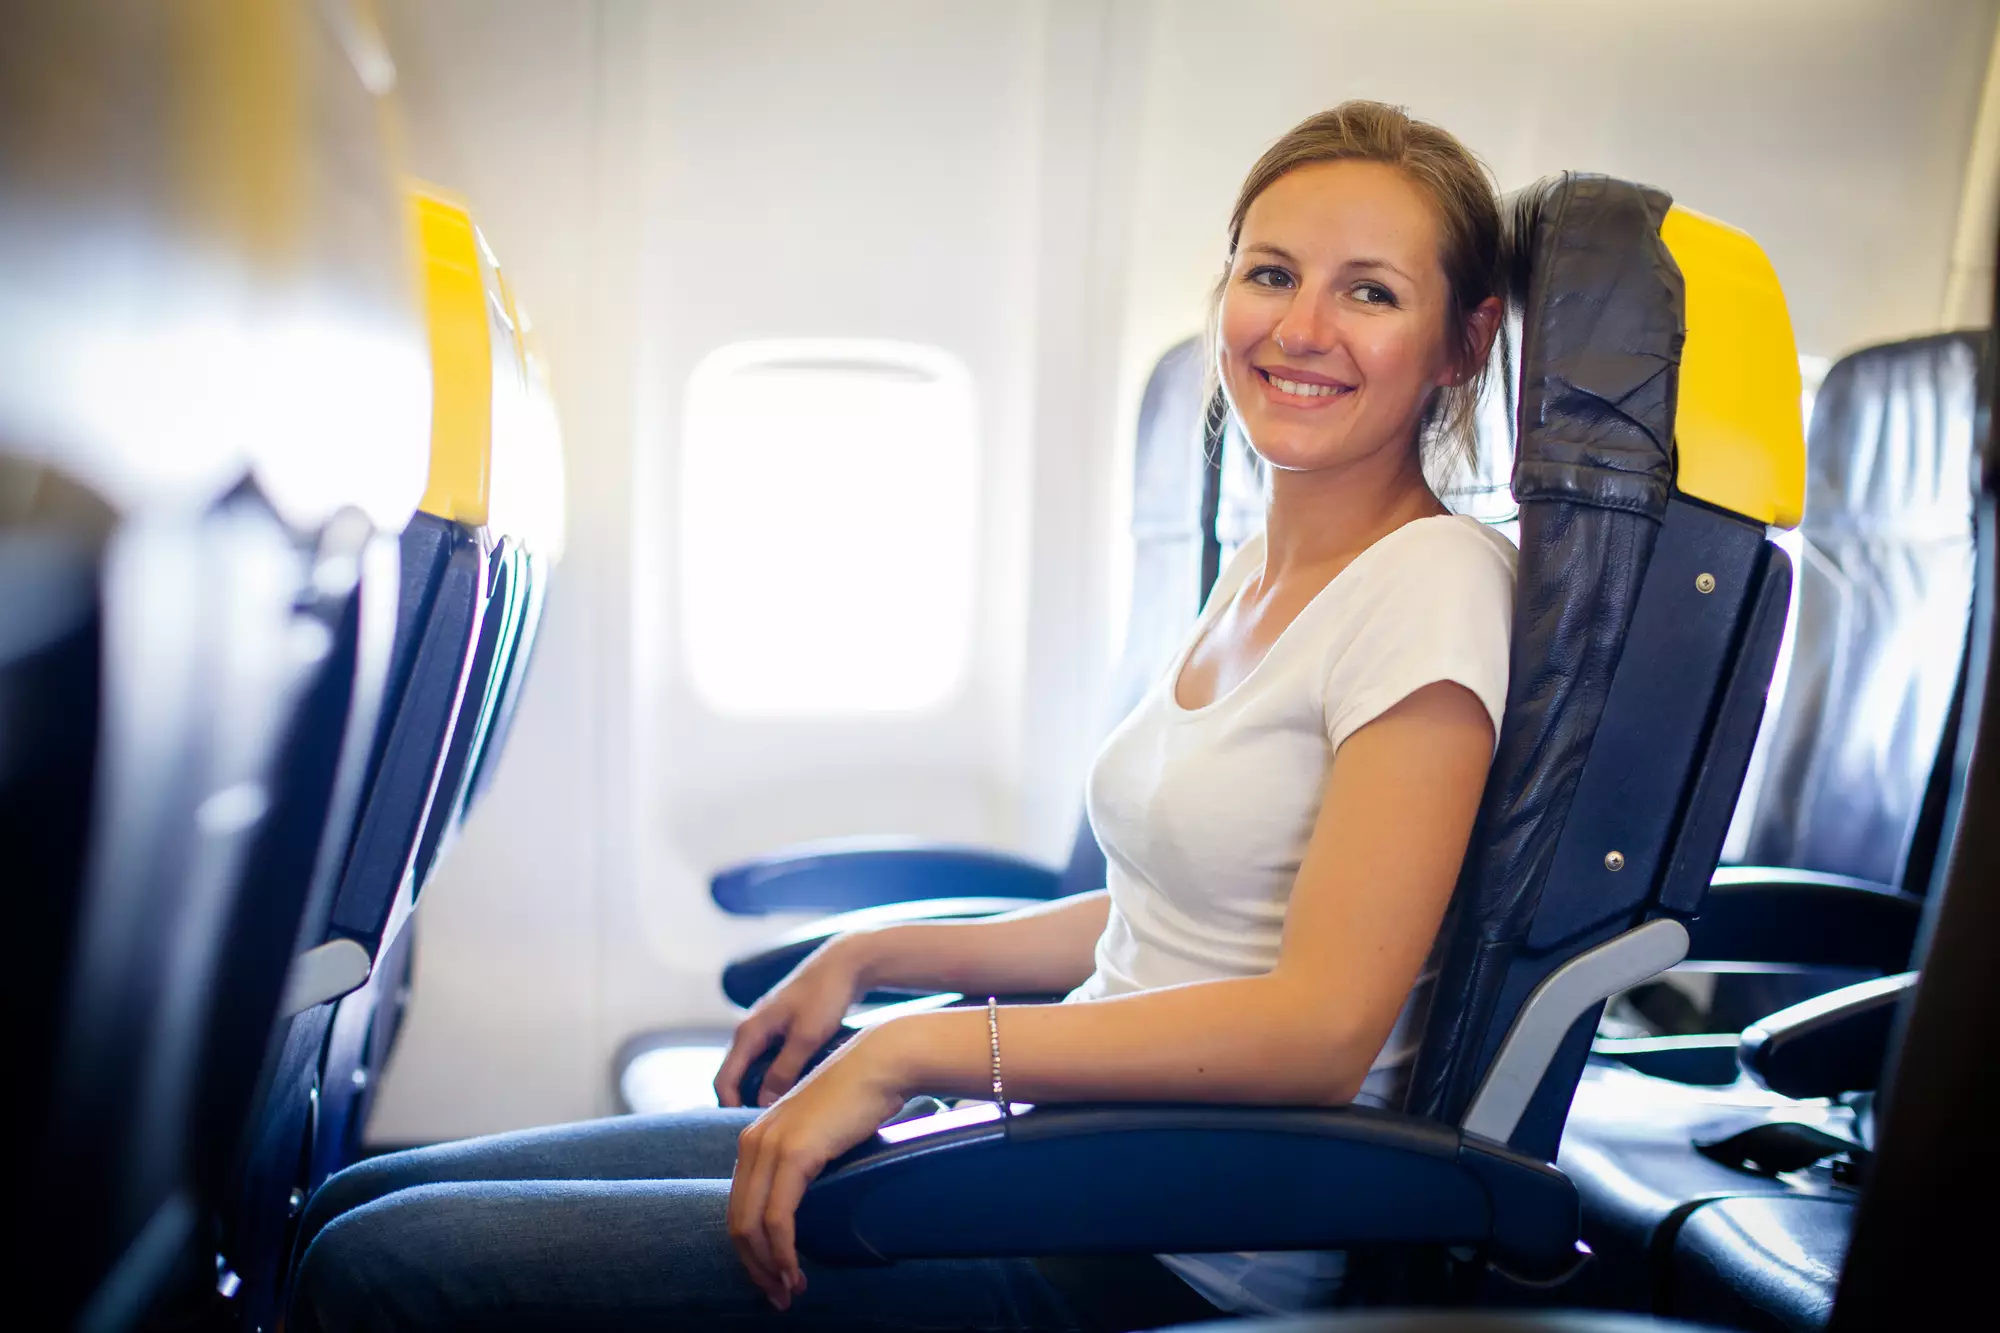 Эксперты рассказали, как правильно откидывать спинку кресла в самолете